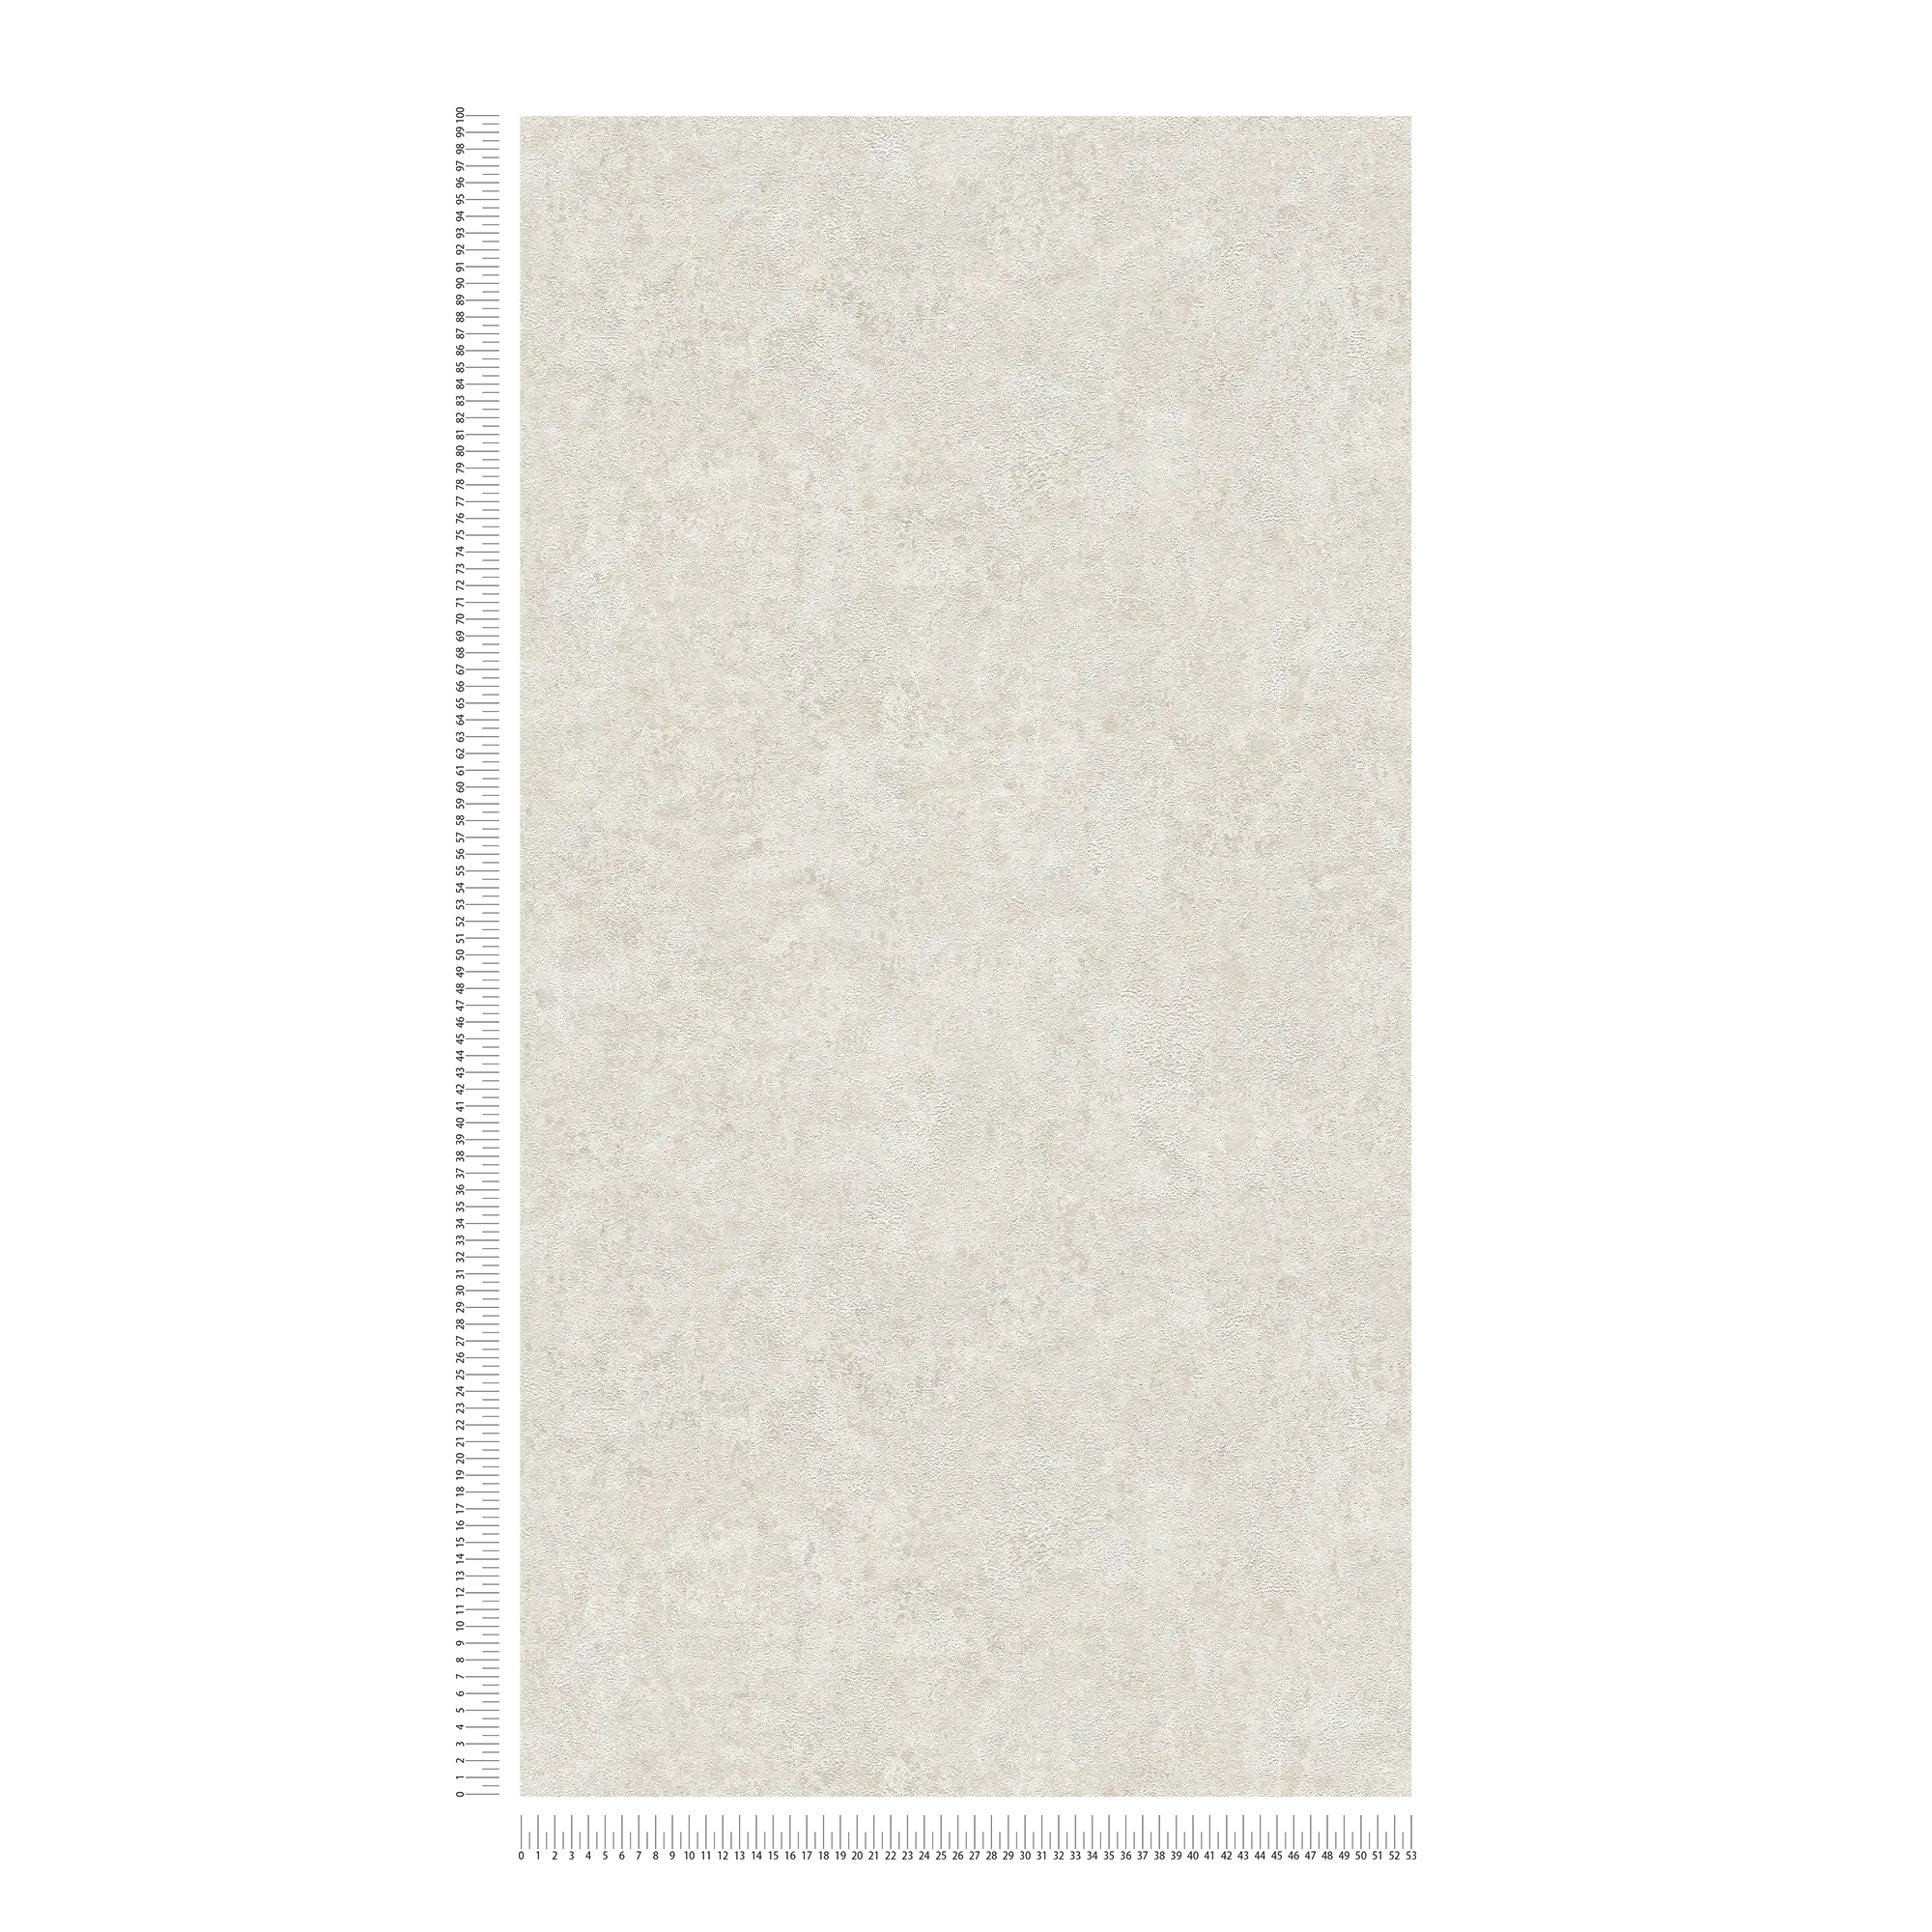             Carta da parati in tessuto non tessuto con effetto metallico e aspetto usato - crema, grigio
        